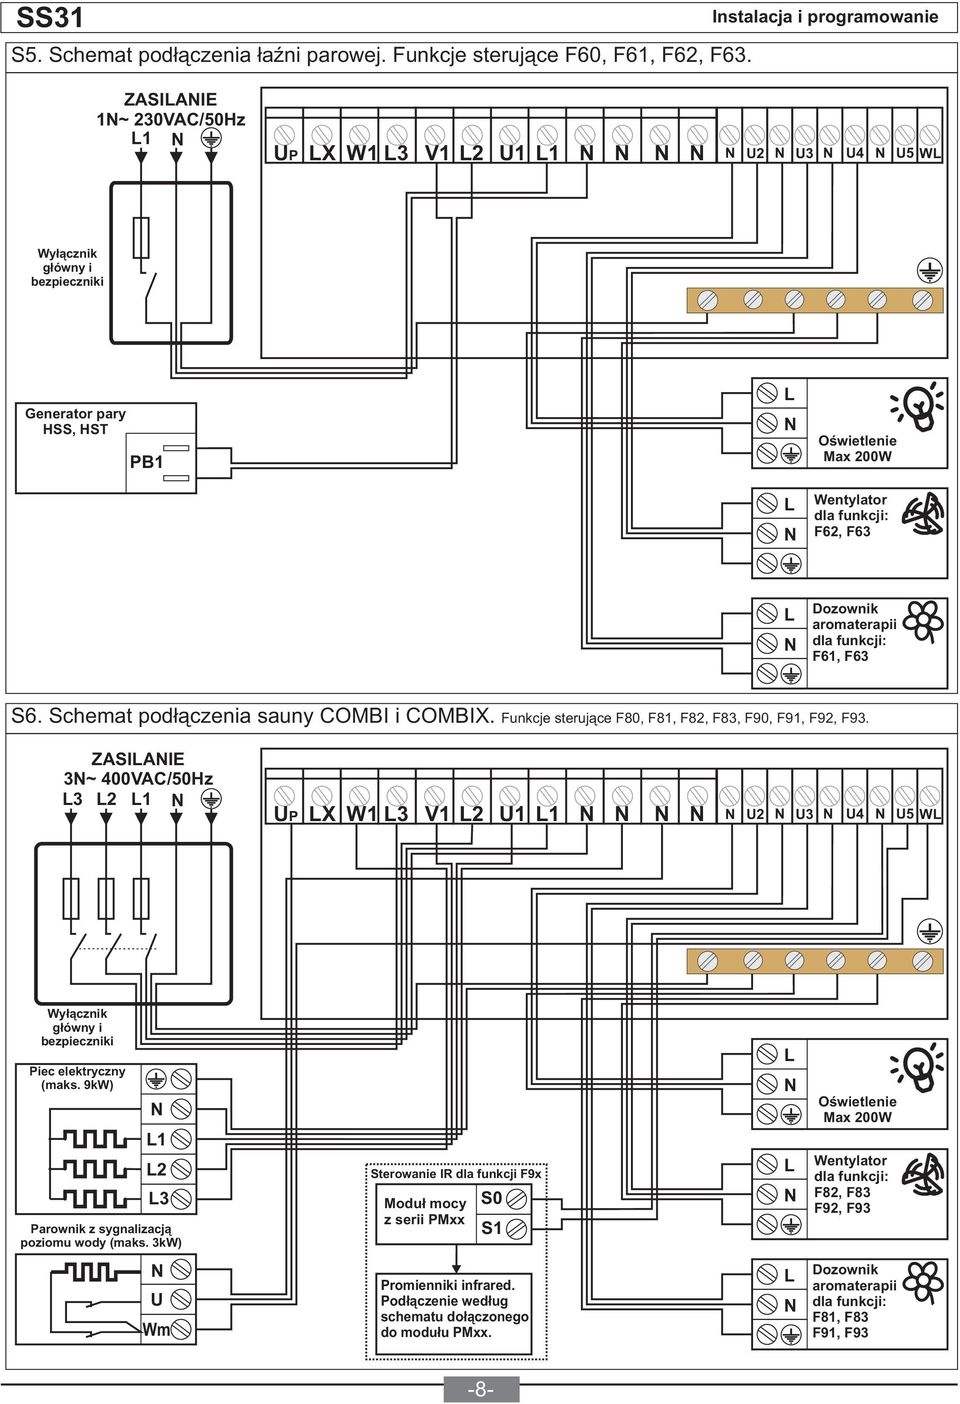 Schemat podłączenia sauny COMBI i COMBIX. Funkcje sterujące F80, F81, F82, F83, F90, F91, F92, F93.